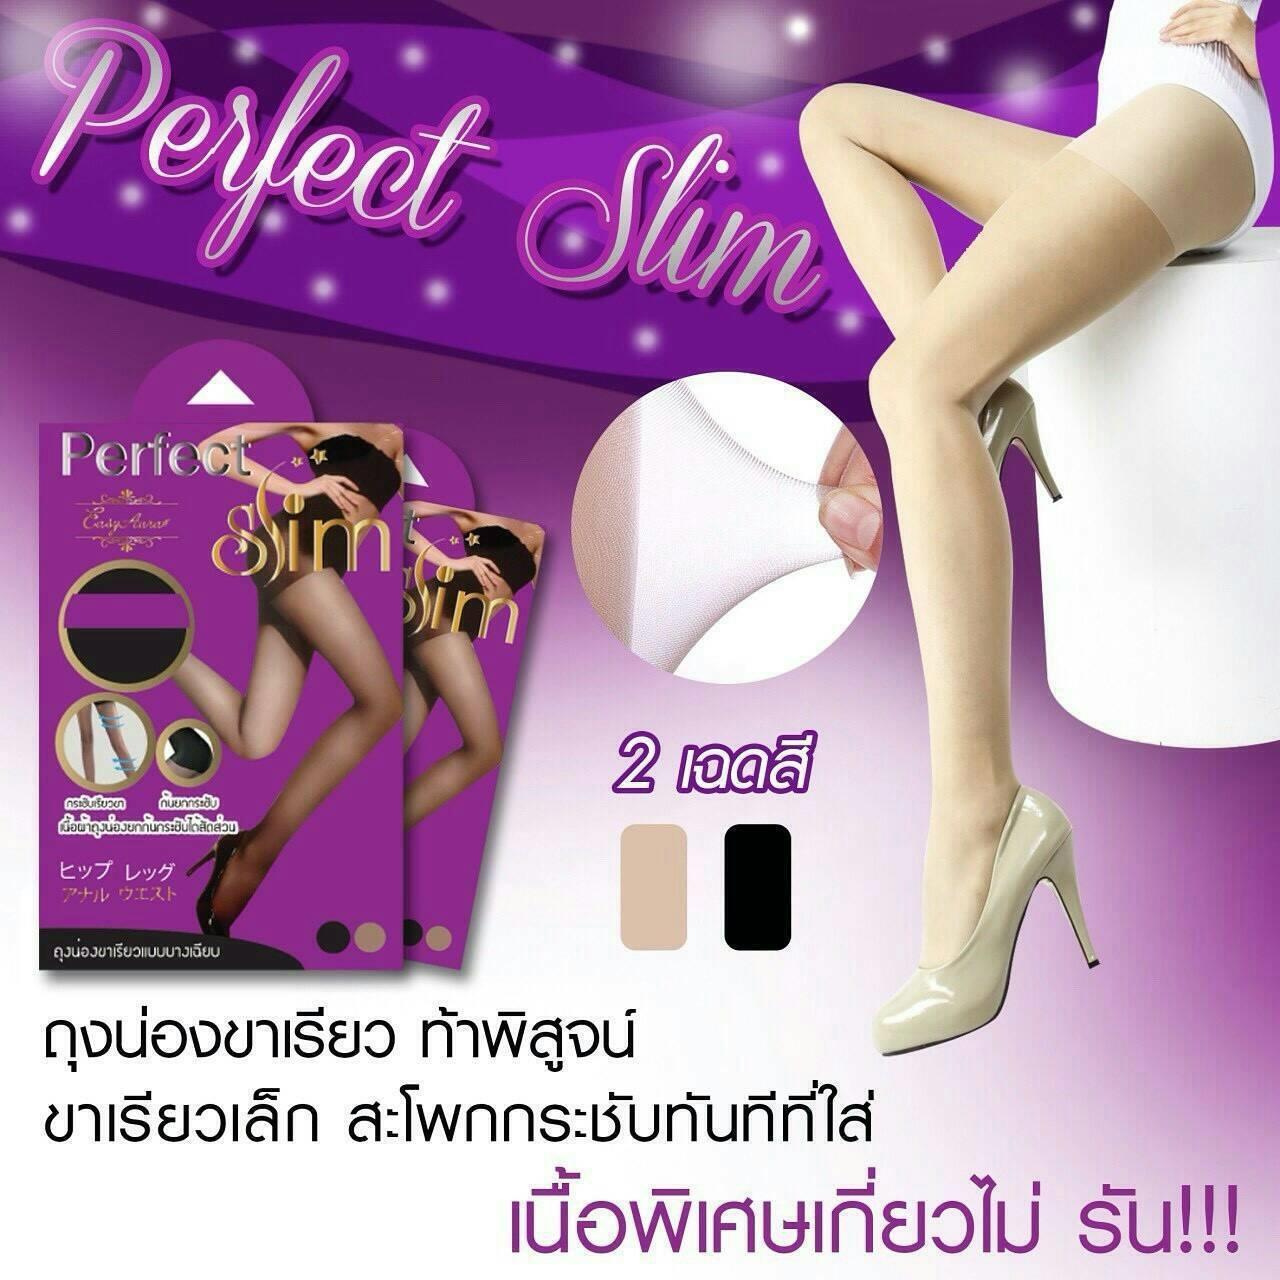 ✖✖✖✖ perfect slim ถุงน่องขาเรียวเก็บสะโพก จากเกาหลี เนื้อพิเศษเกี่ยวไม่ขาด กล่องม่วง ⚡ // มี 3 สี สีเนื้อ - สีดำ - สีเทา // ⚡